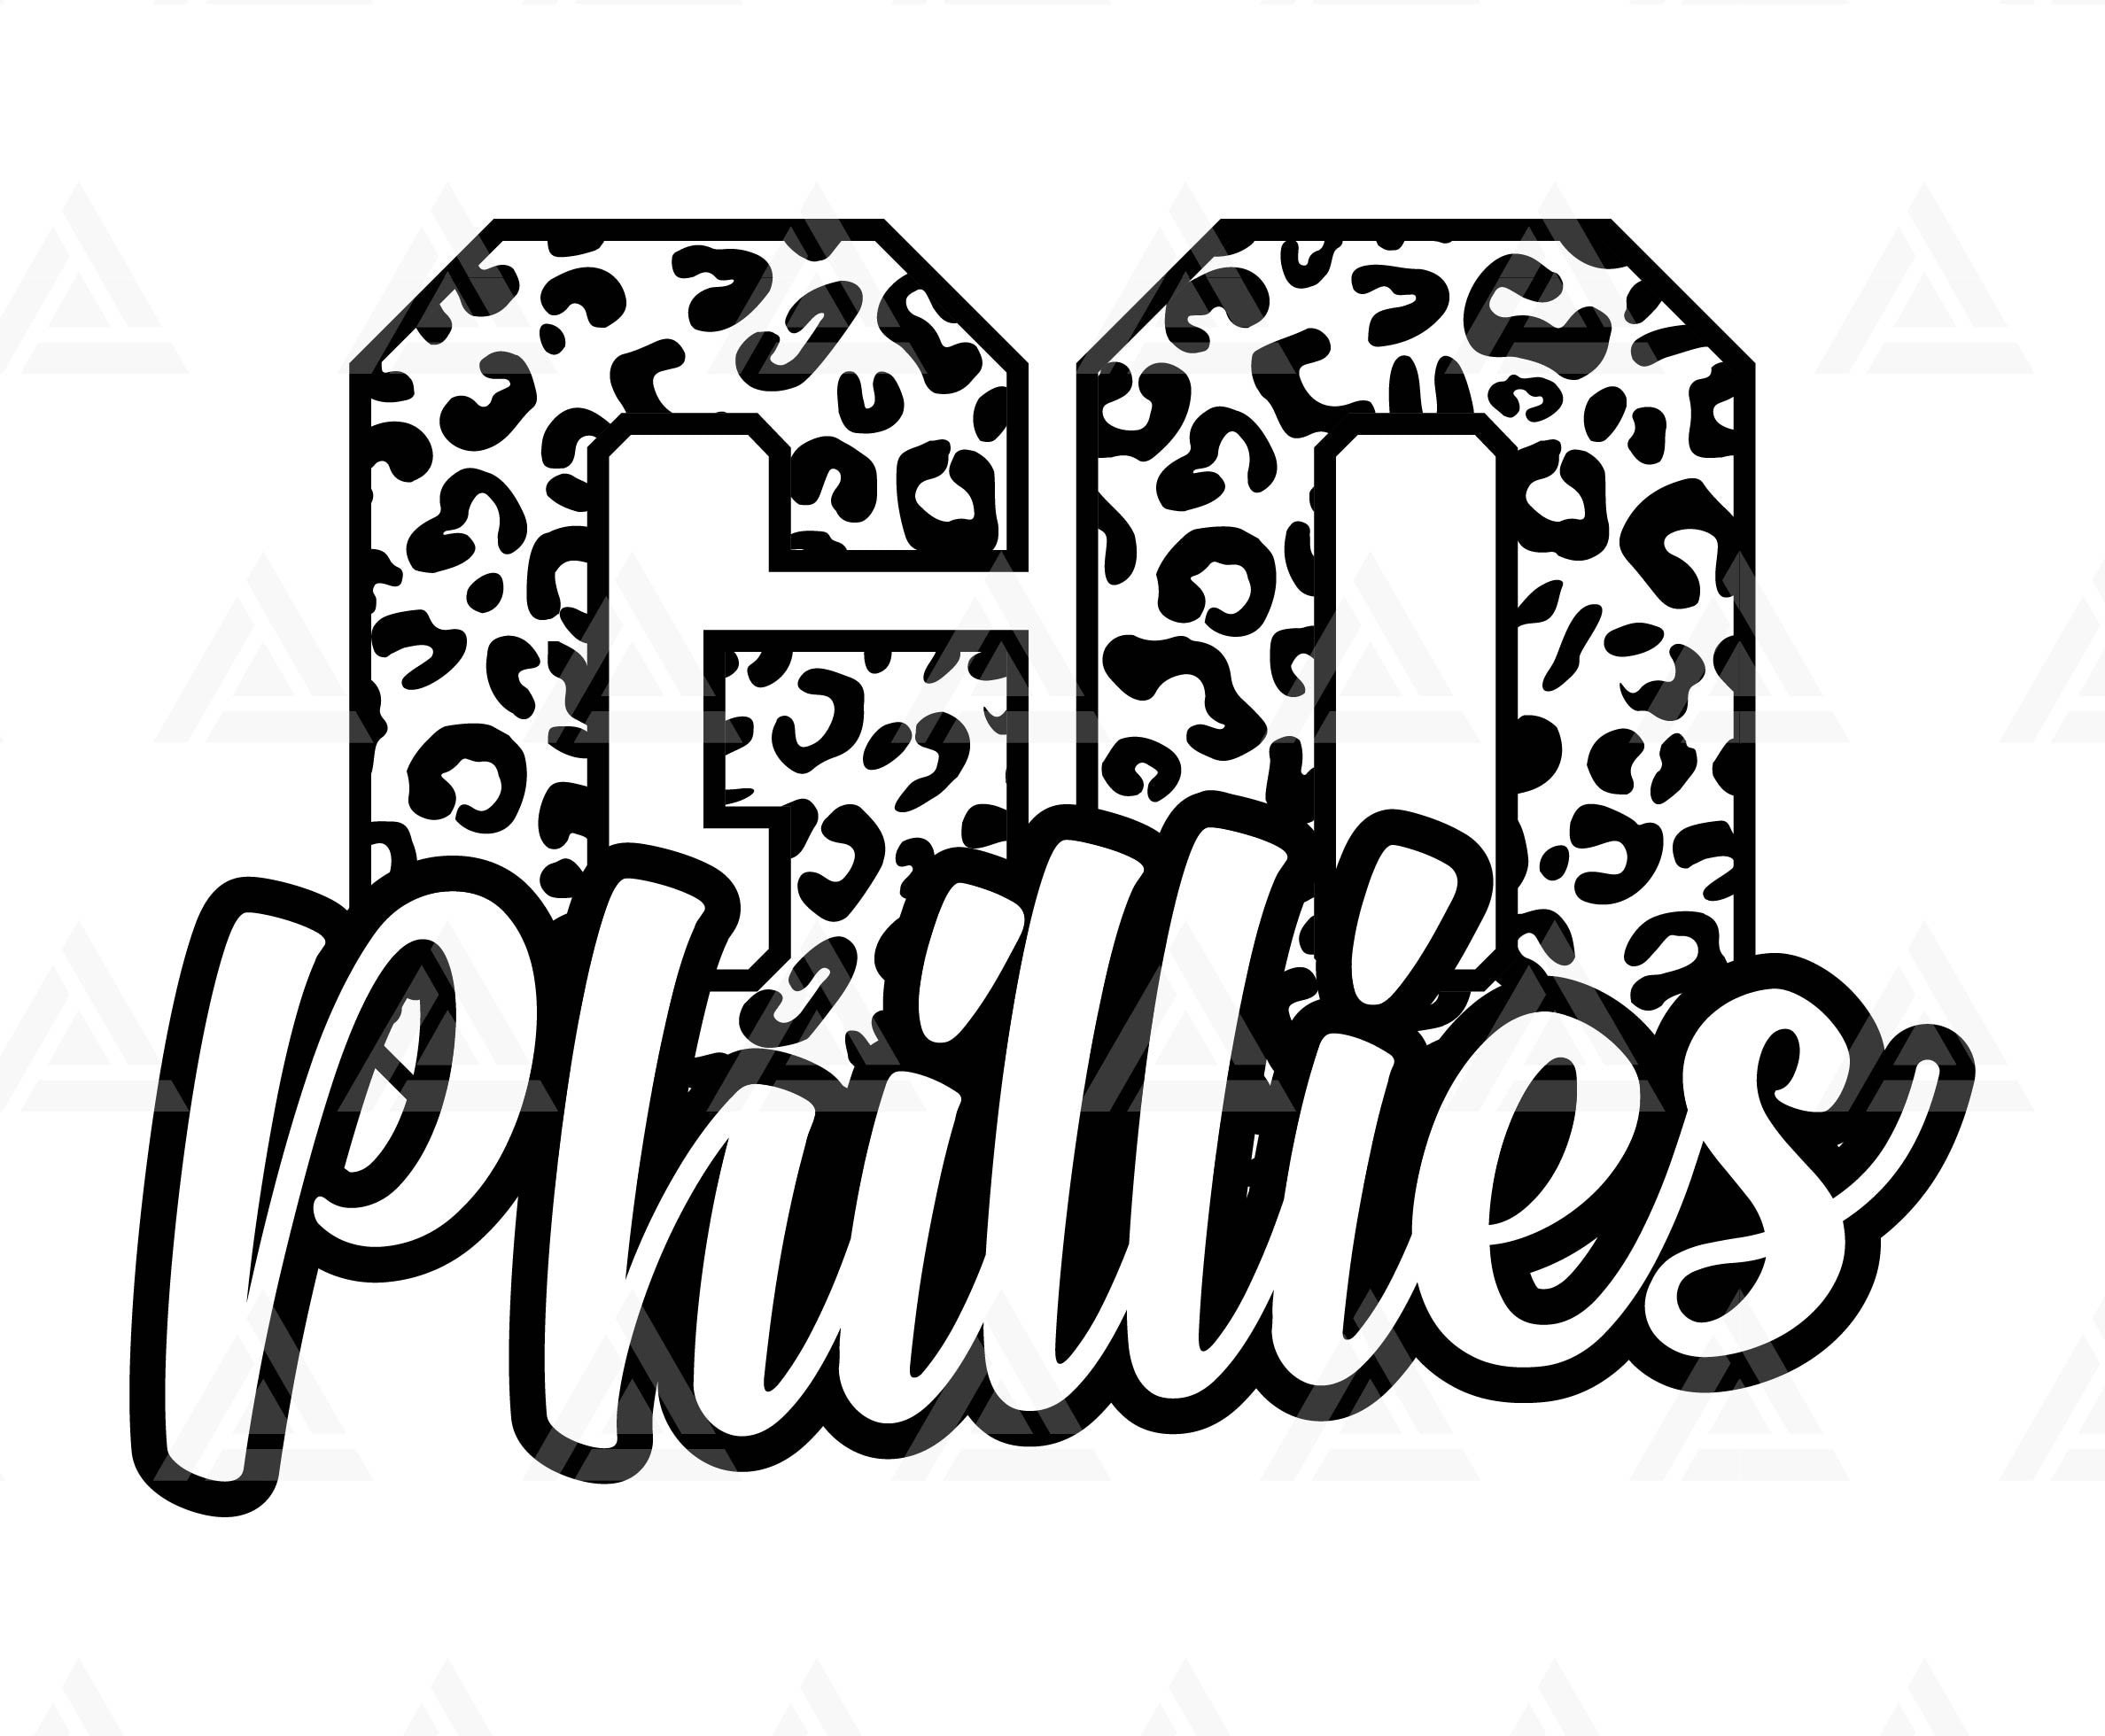 Phillies vector